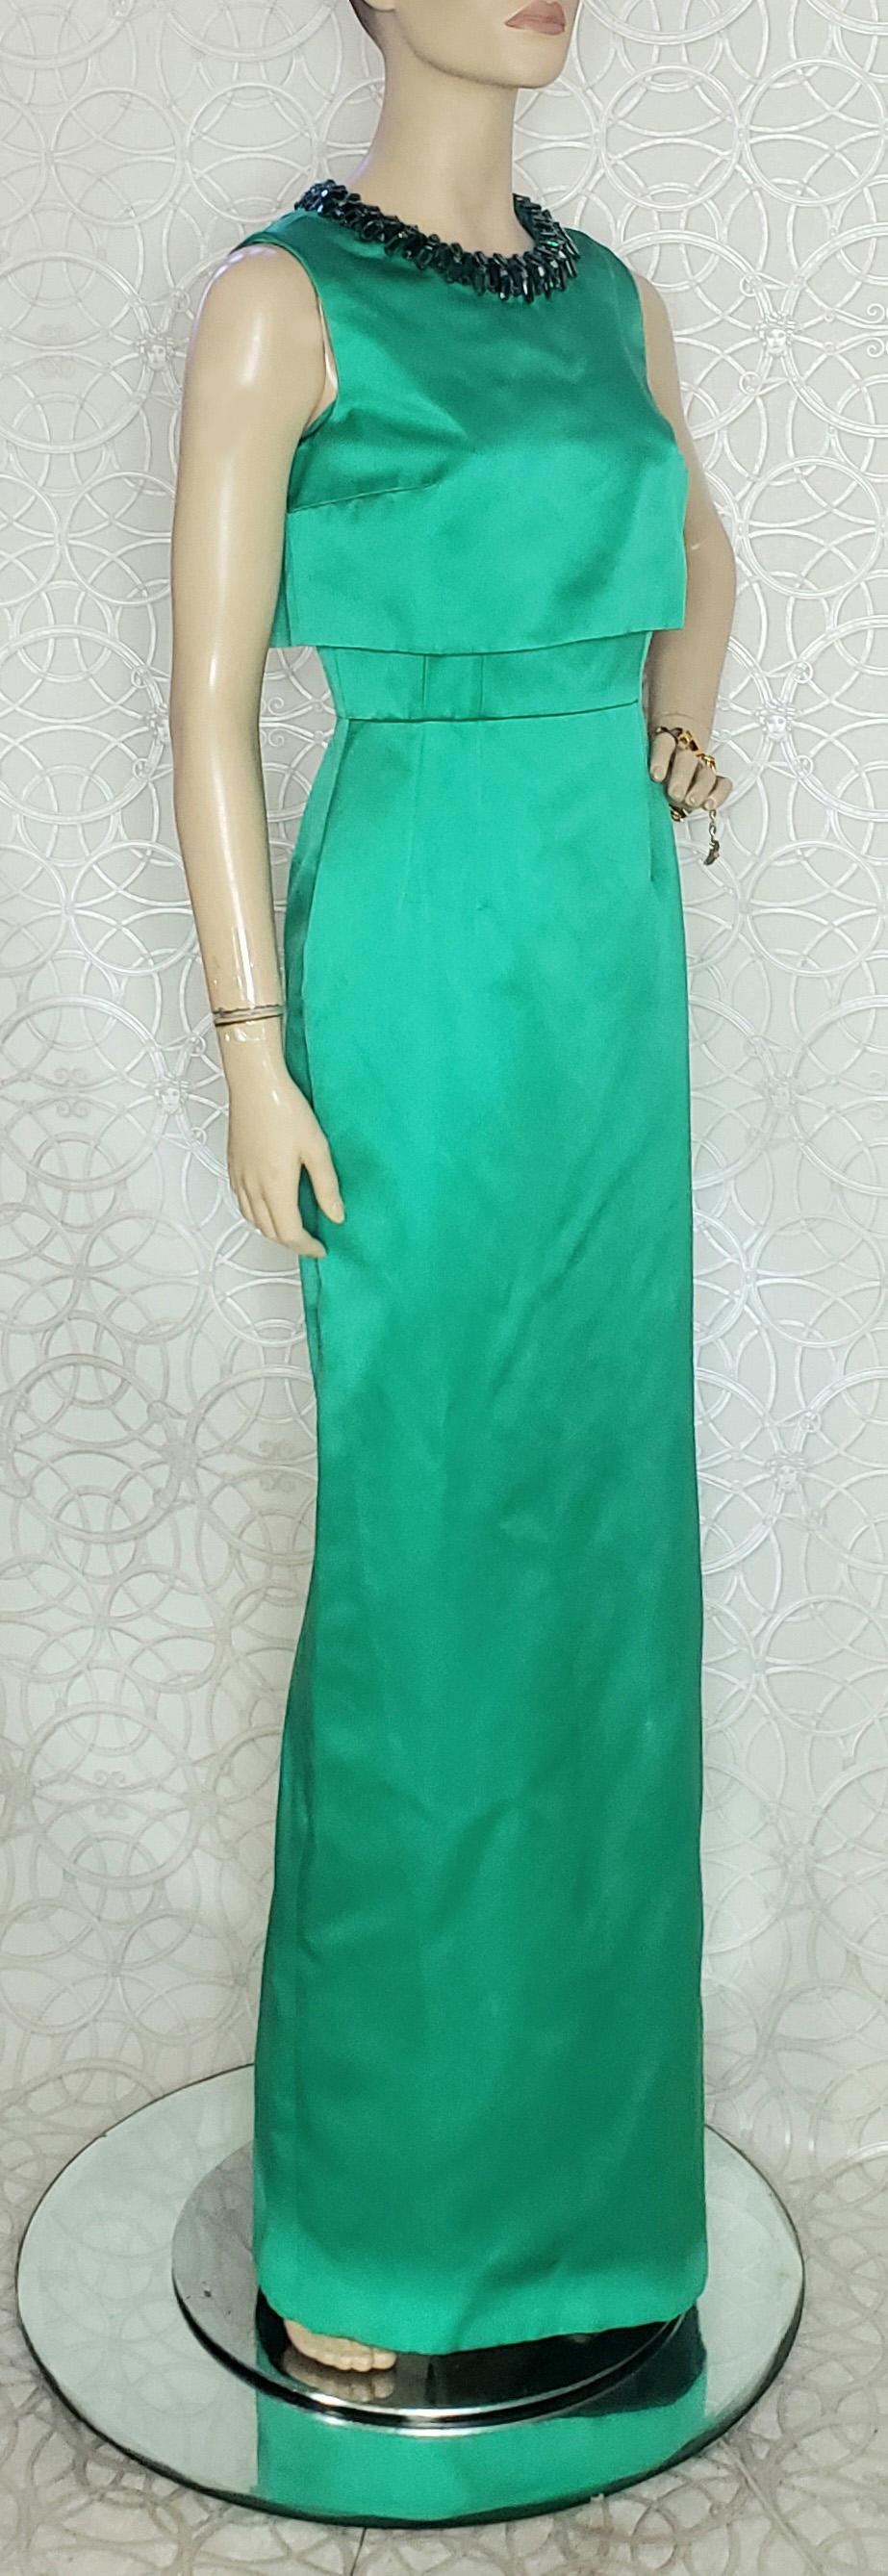 Alexander McQueen 

Smaragdgrünes langes Kleid mit Glasperlen

Inhalt: 100% Seide
Reißverschluss hinten
Ärmellos
Rückenschlitz

Größe 40 - 4 (S)

Länge 63